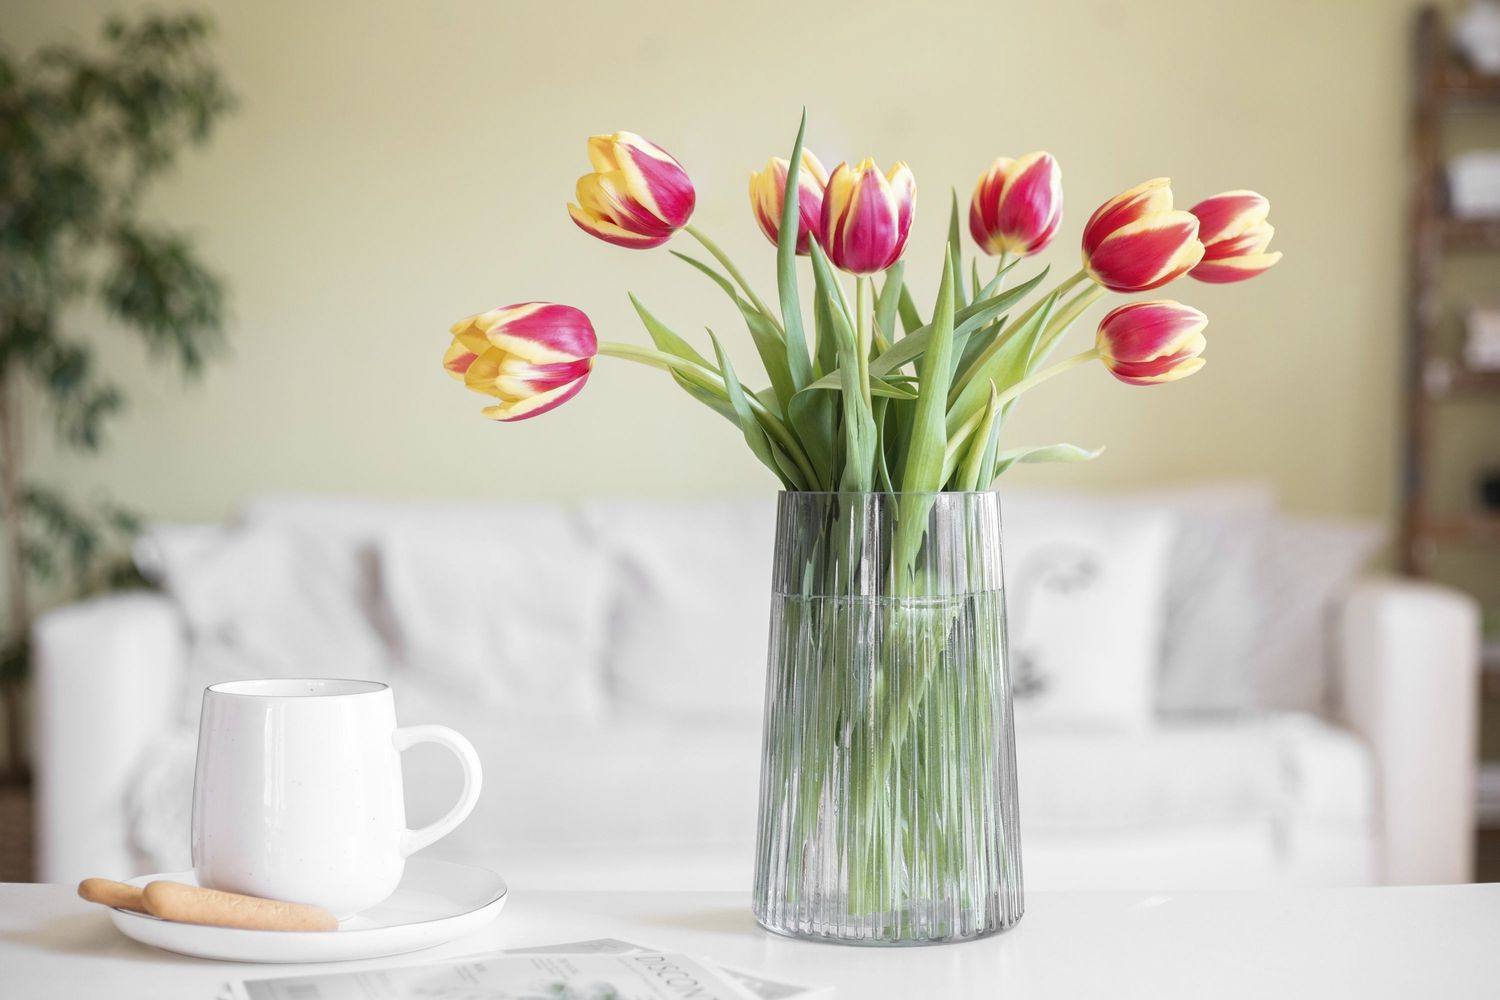 Tulipes coupées jaunes et roses placées dans un vase en verre à côté d'une tasse à café